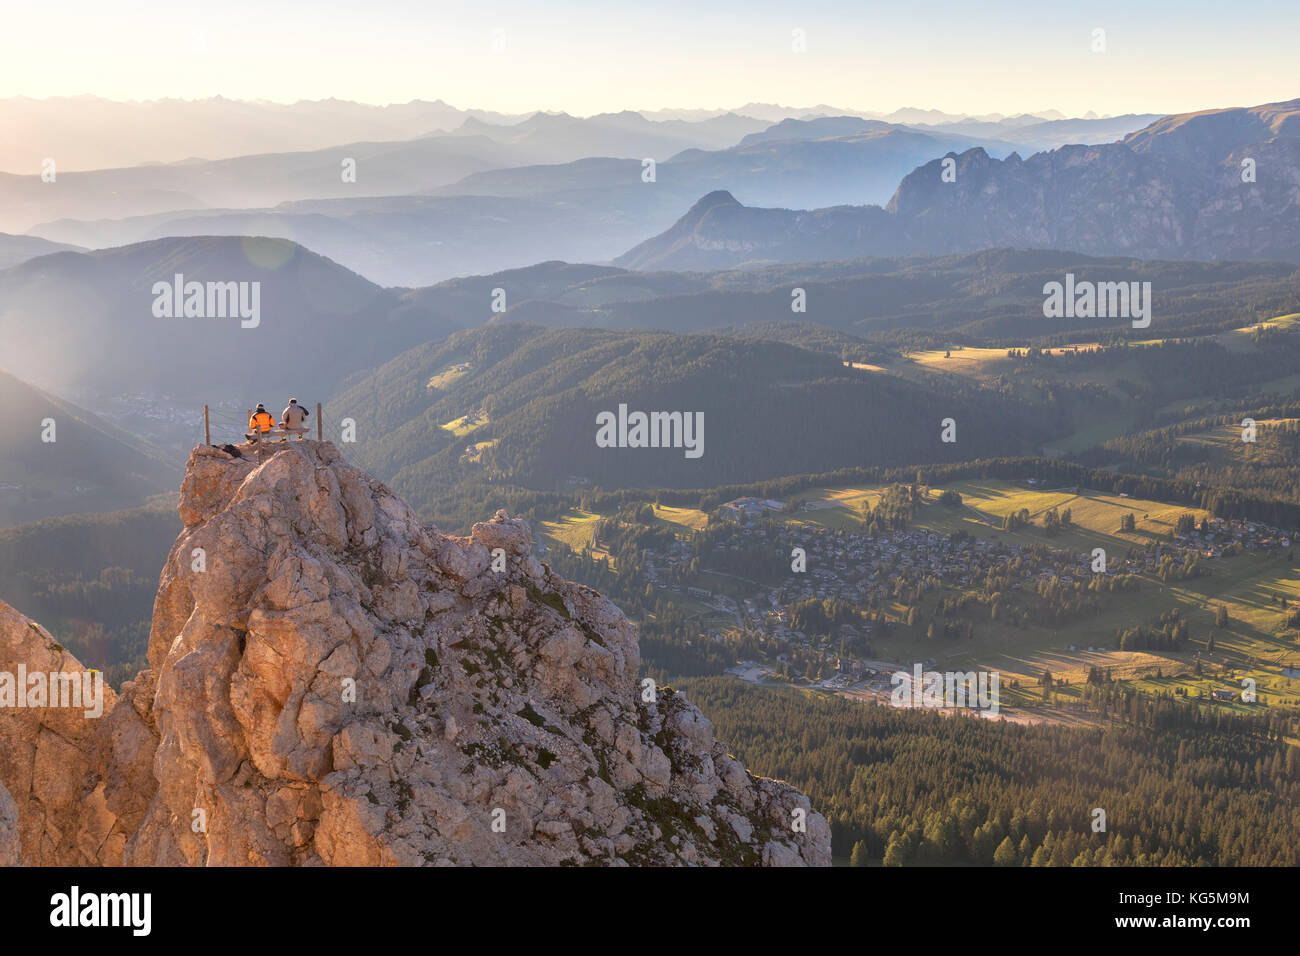 Les randonneurs assis sur le sommet de la Cima di pulpito popa - poppekanzel au coucher du soleil à la recherche à l'horizon, Latemar, Tyrol du Sud, Bolzano, Dolomites, Italie Banque D'Images